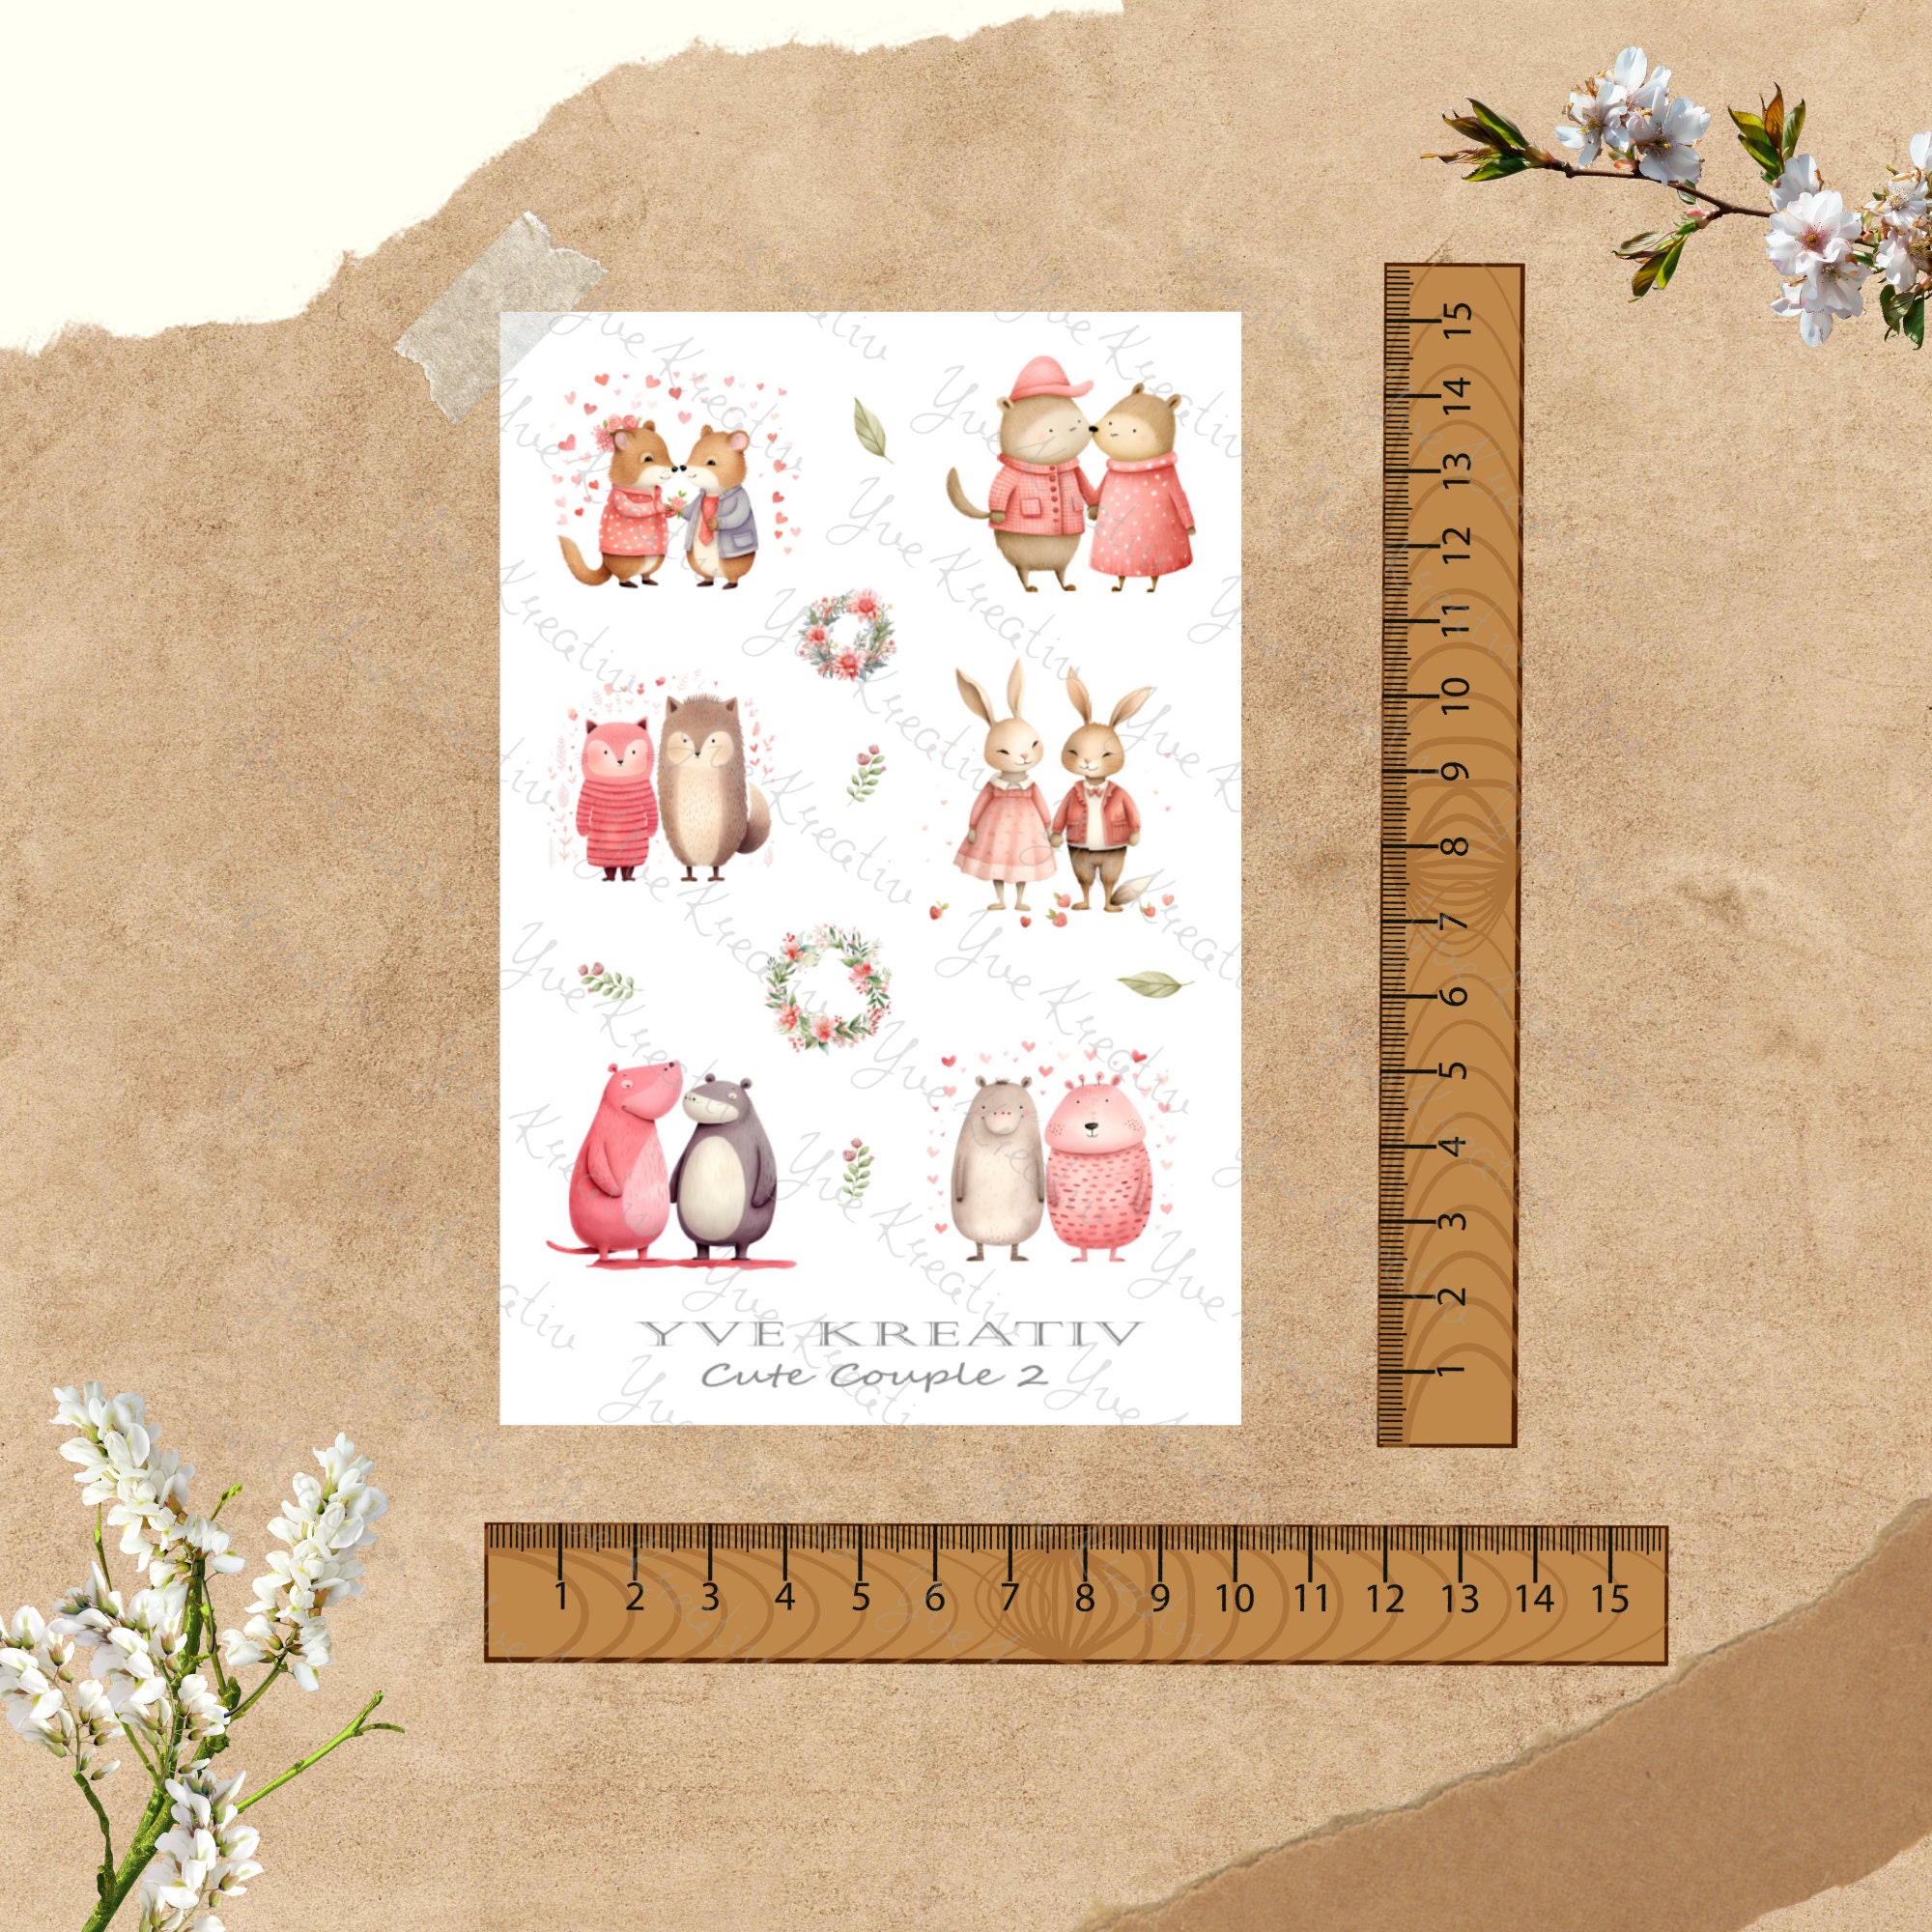 Sticker Bogen - Cute Couple | Sticker Set - Journal Sticker - Aufkleber 4 Bögen zur Auswahl in Weiß oder Transparent